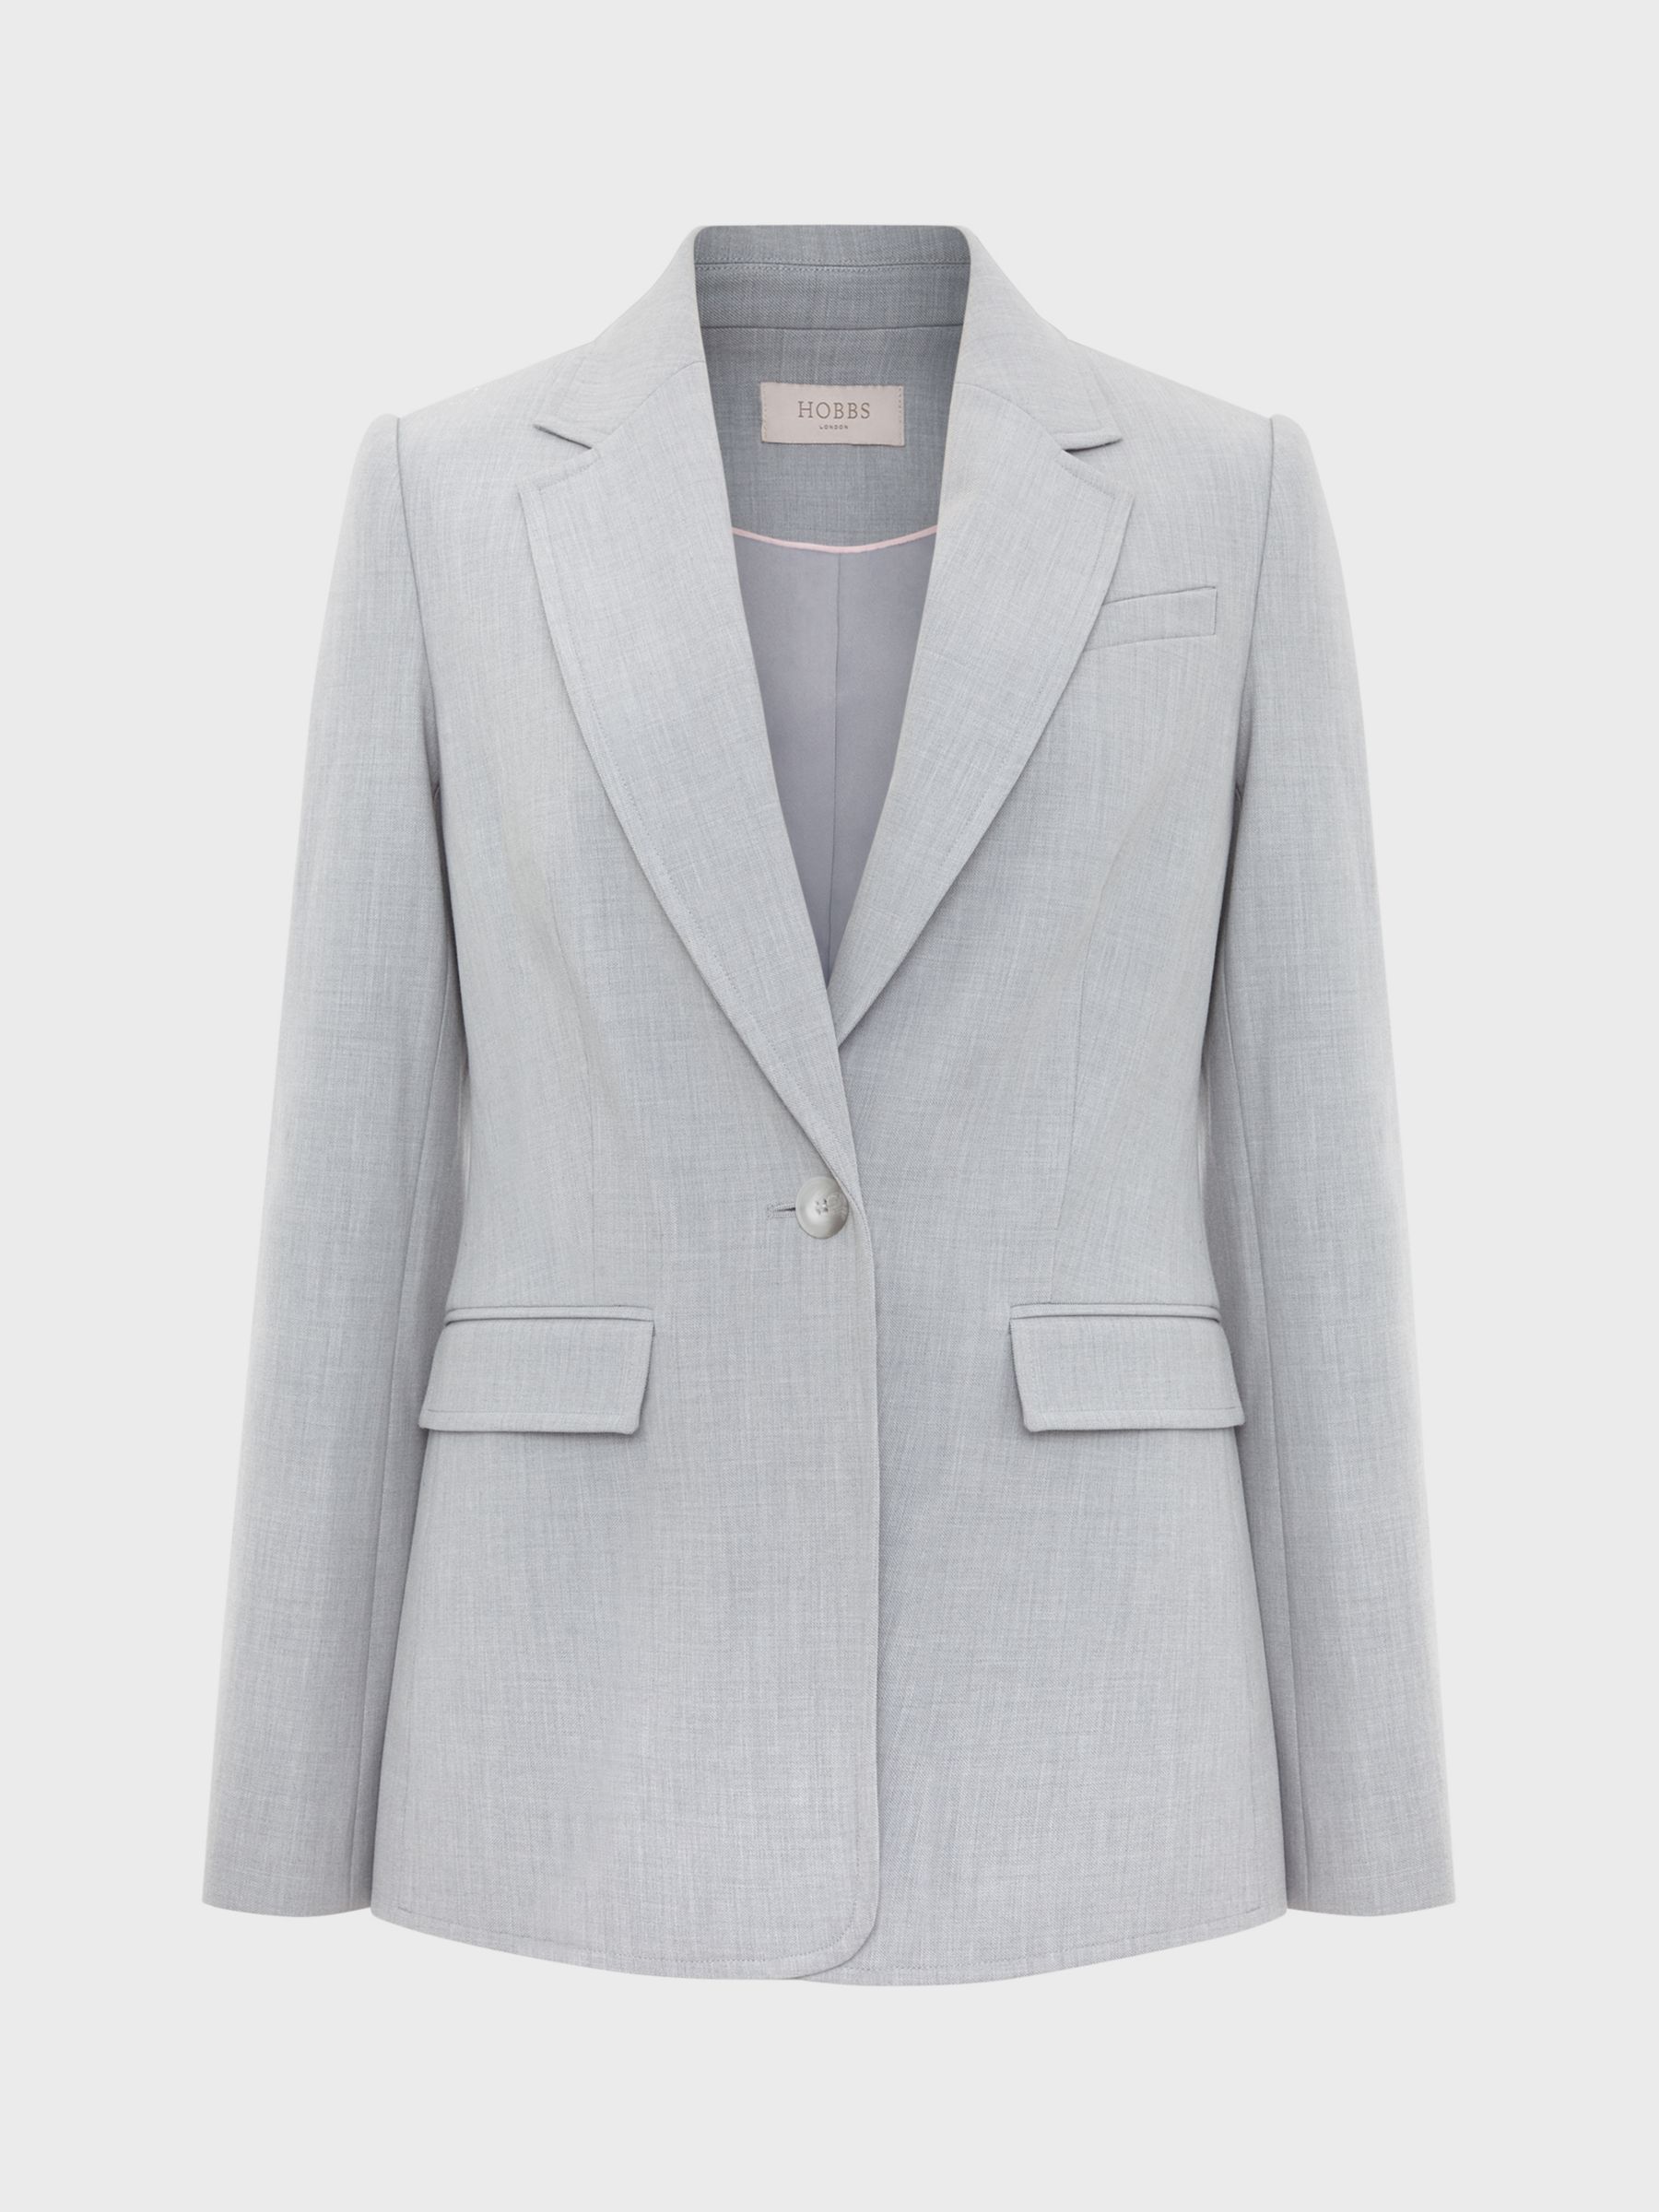 Hobbs Lauren Tailored Jacket, Pale Grey, 8